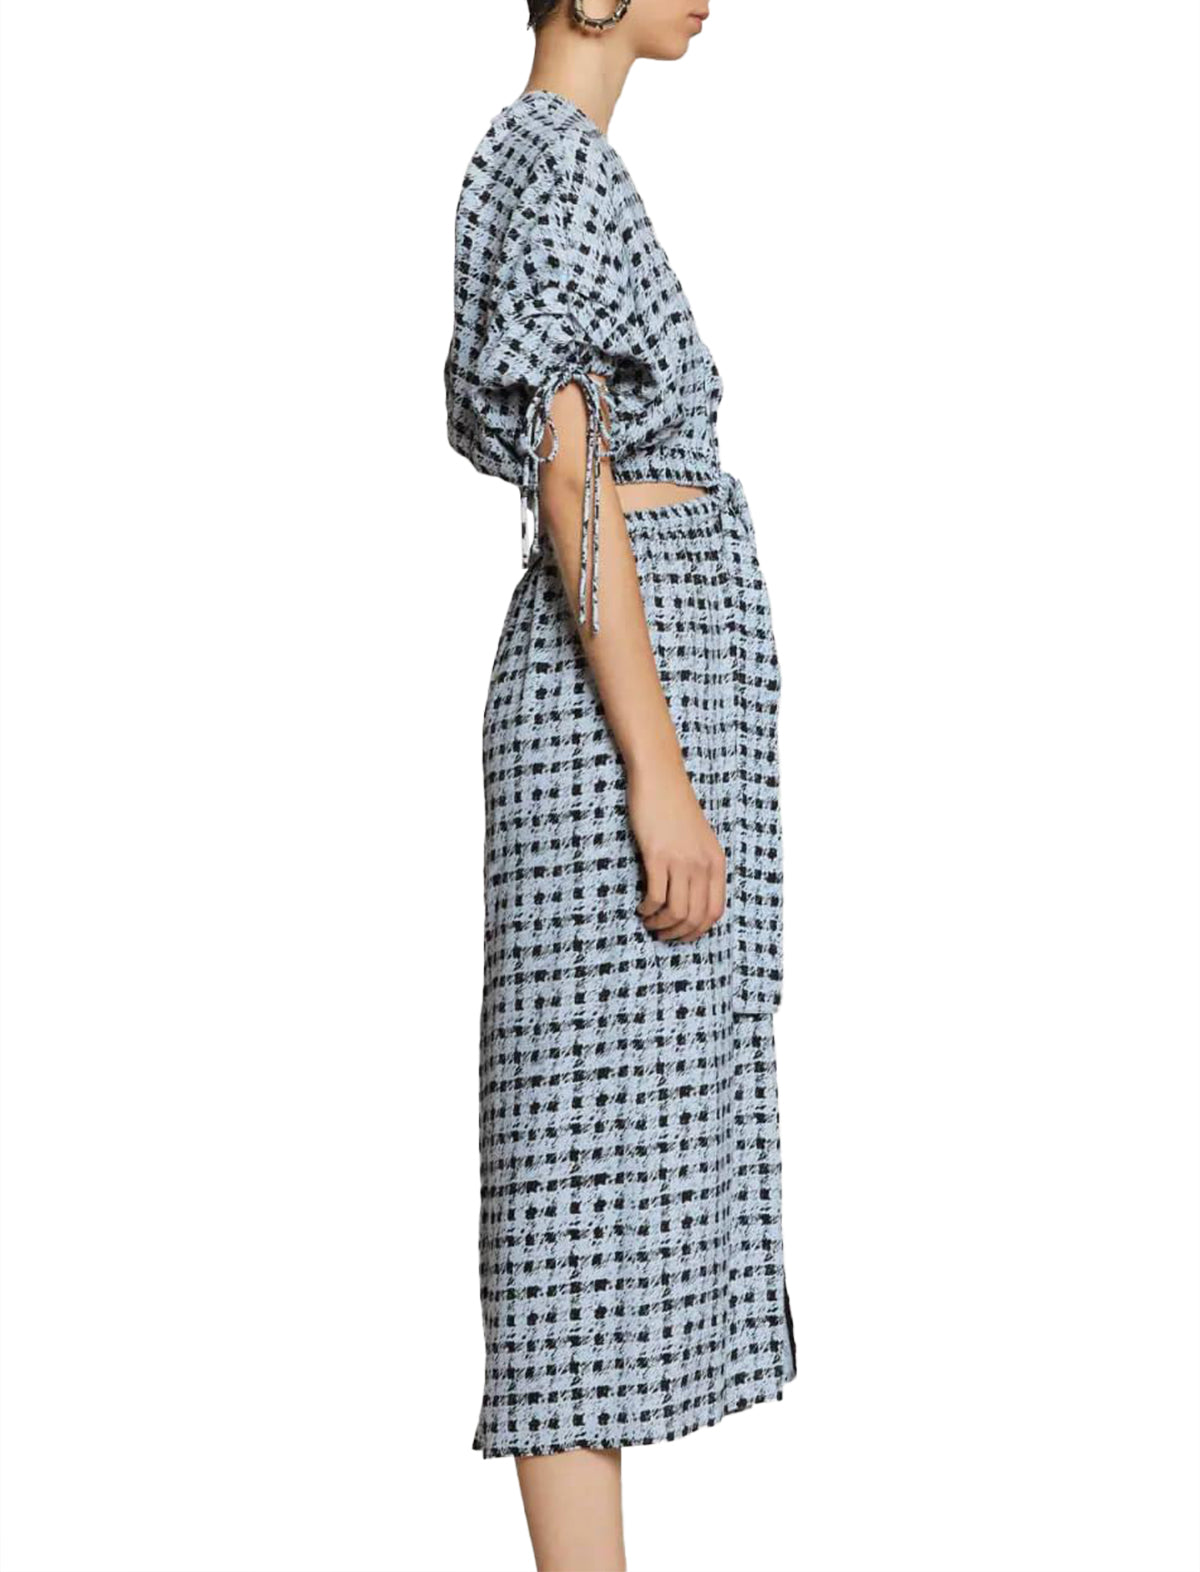 PROENZA SCHOULER WHITE LABEL Printed Georgette Cut Out Dress In Blue/ Black